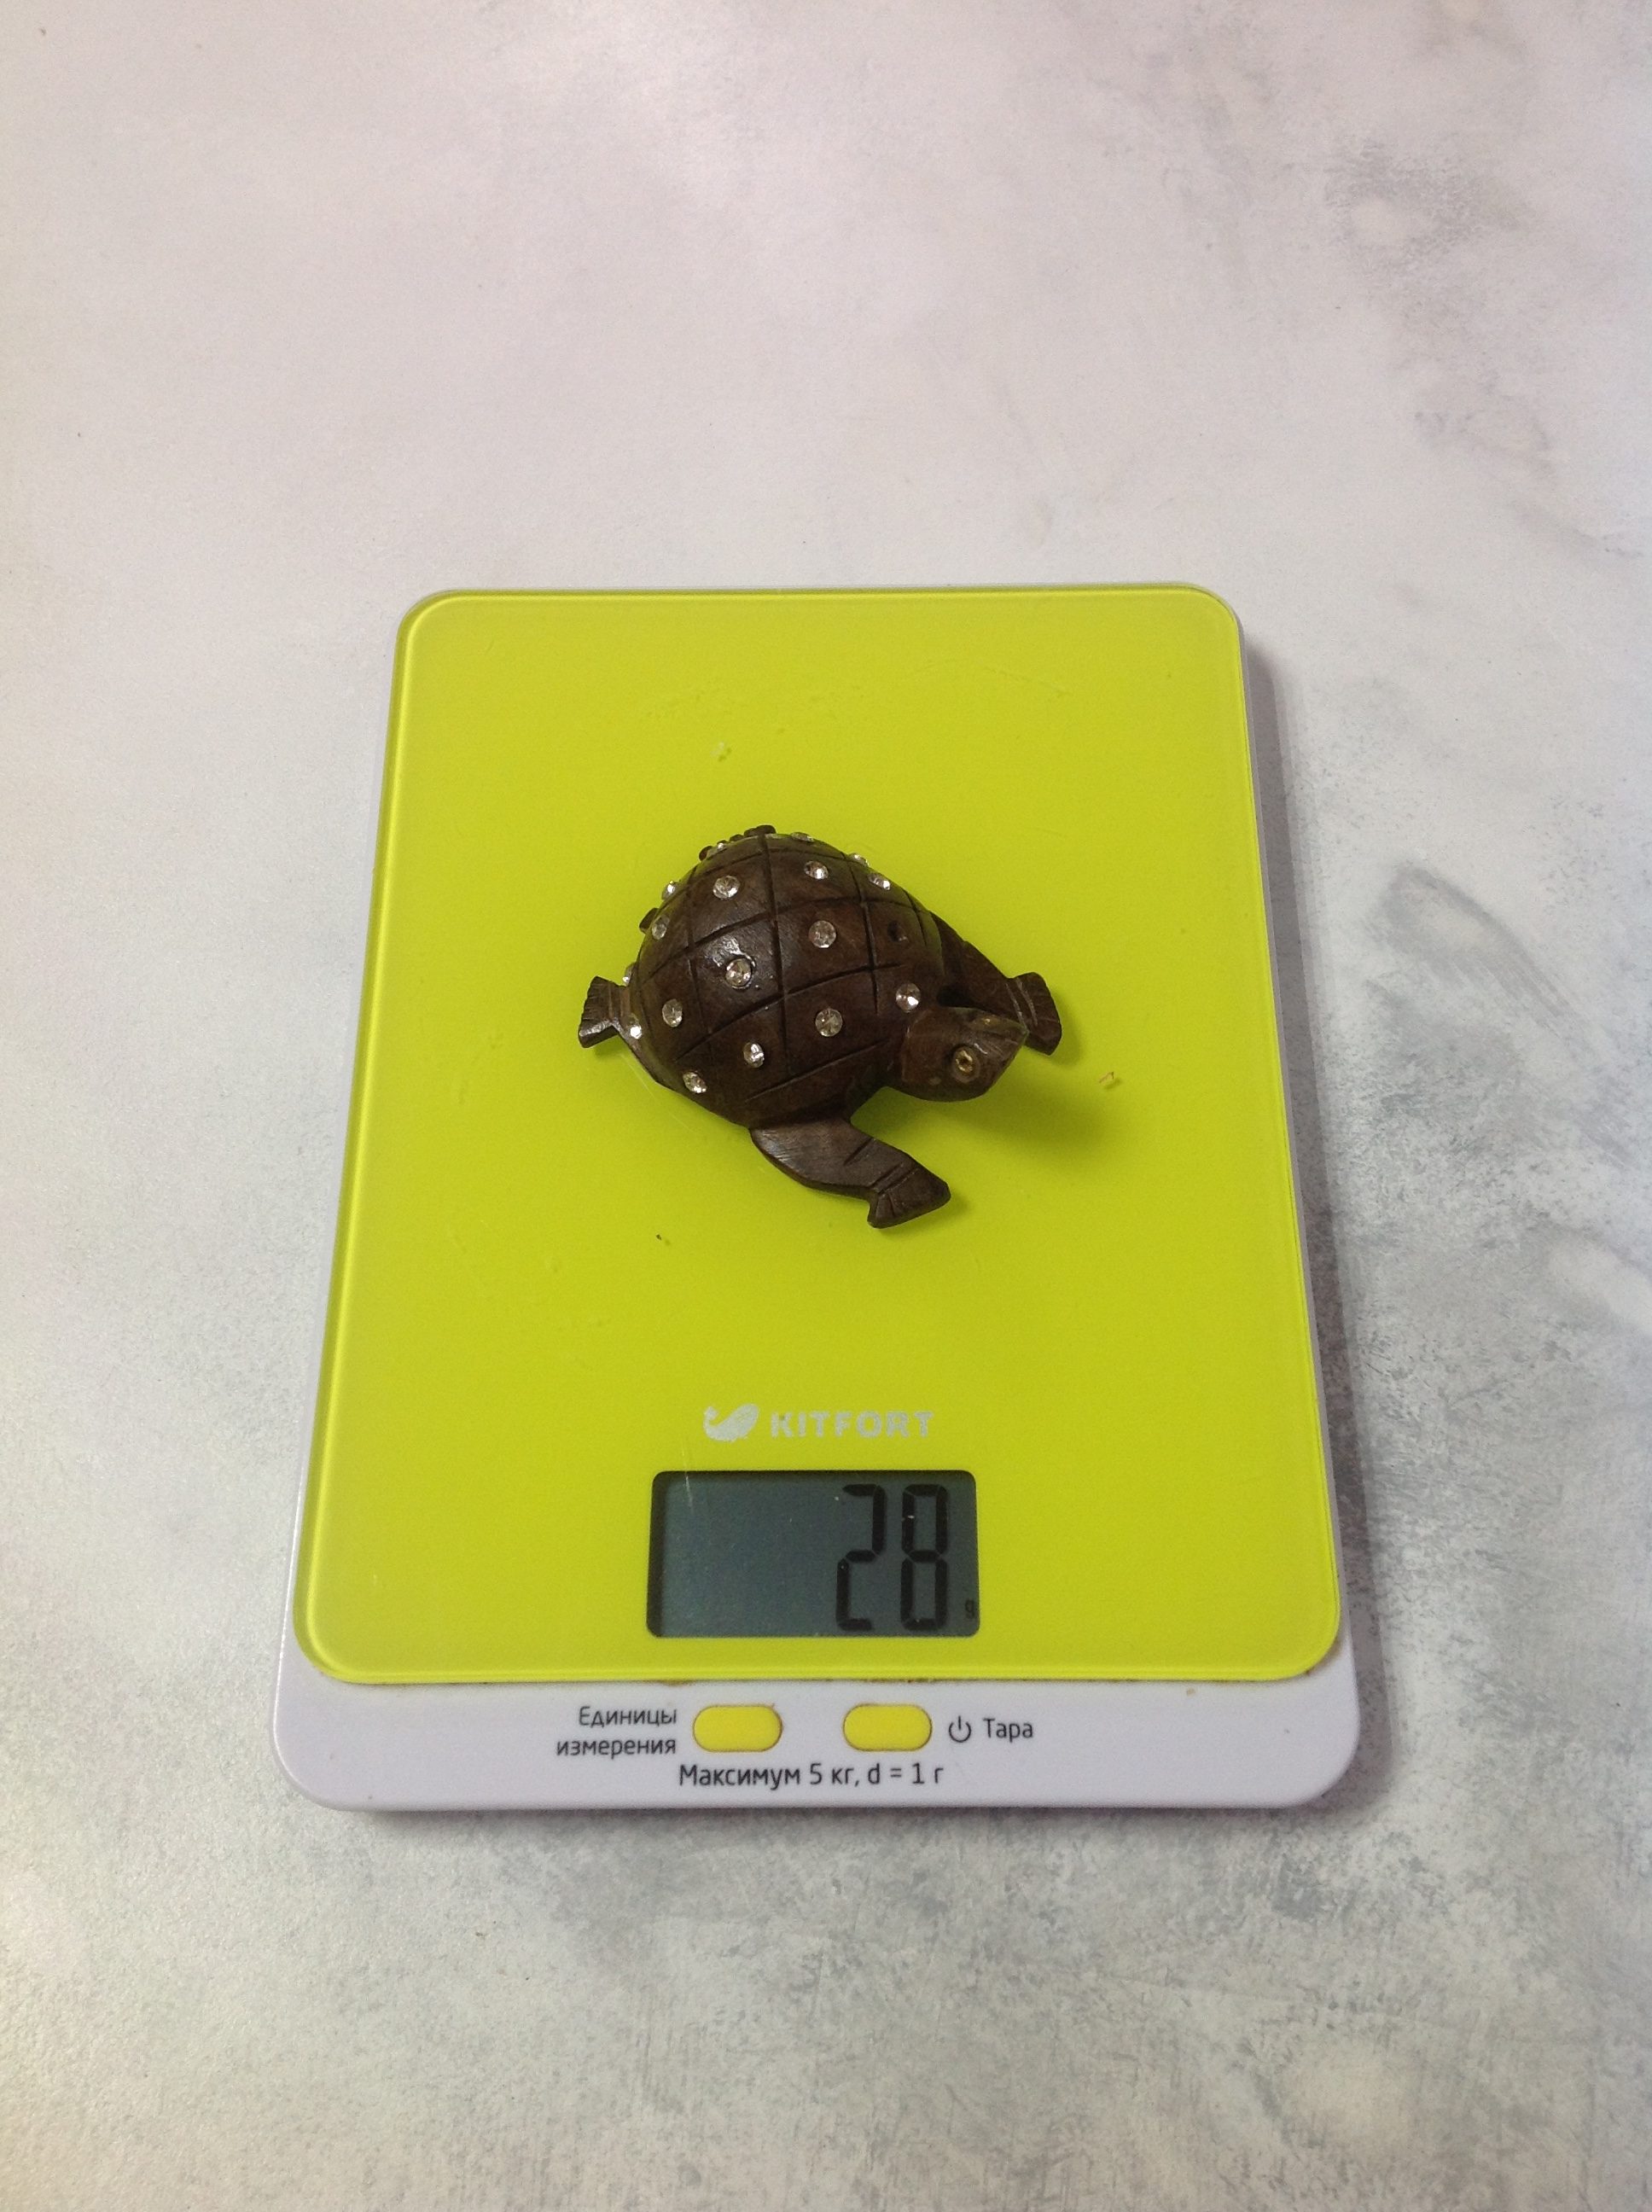 Küçük bir tahta hatıra kaplumbağasının ağırlığı ne kadardır?